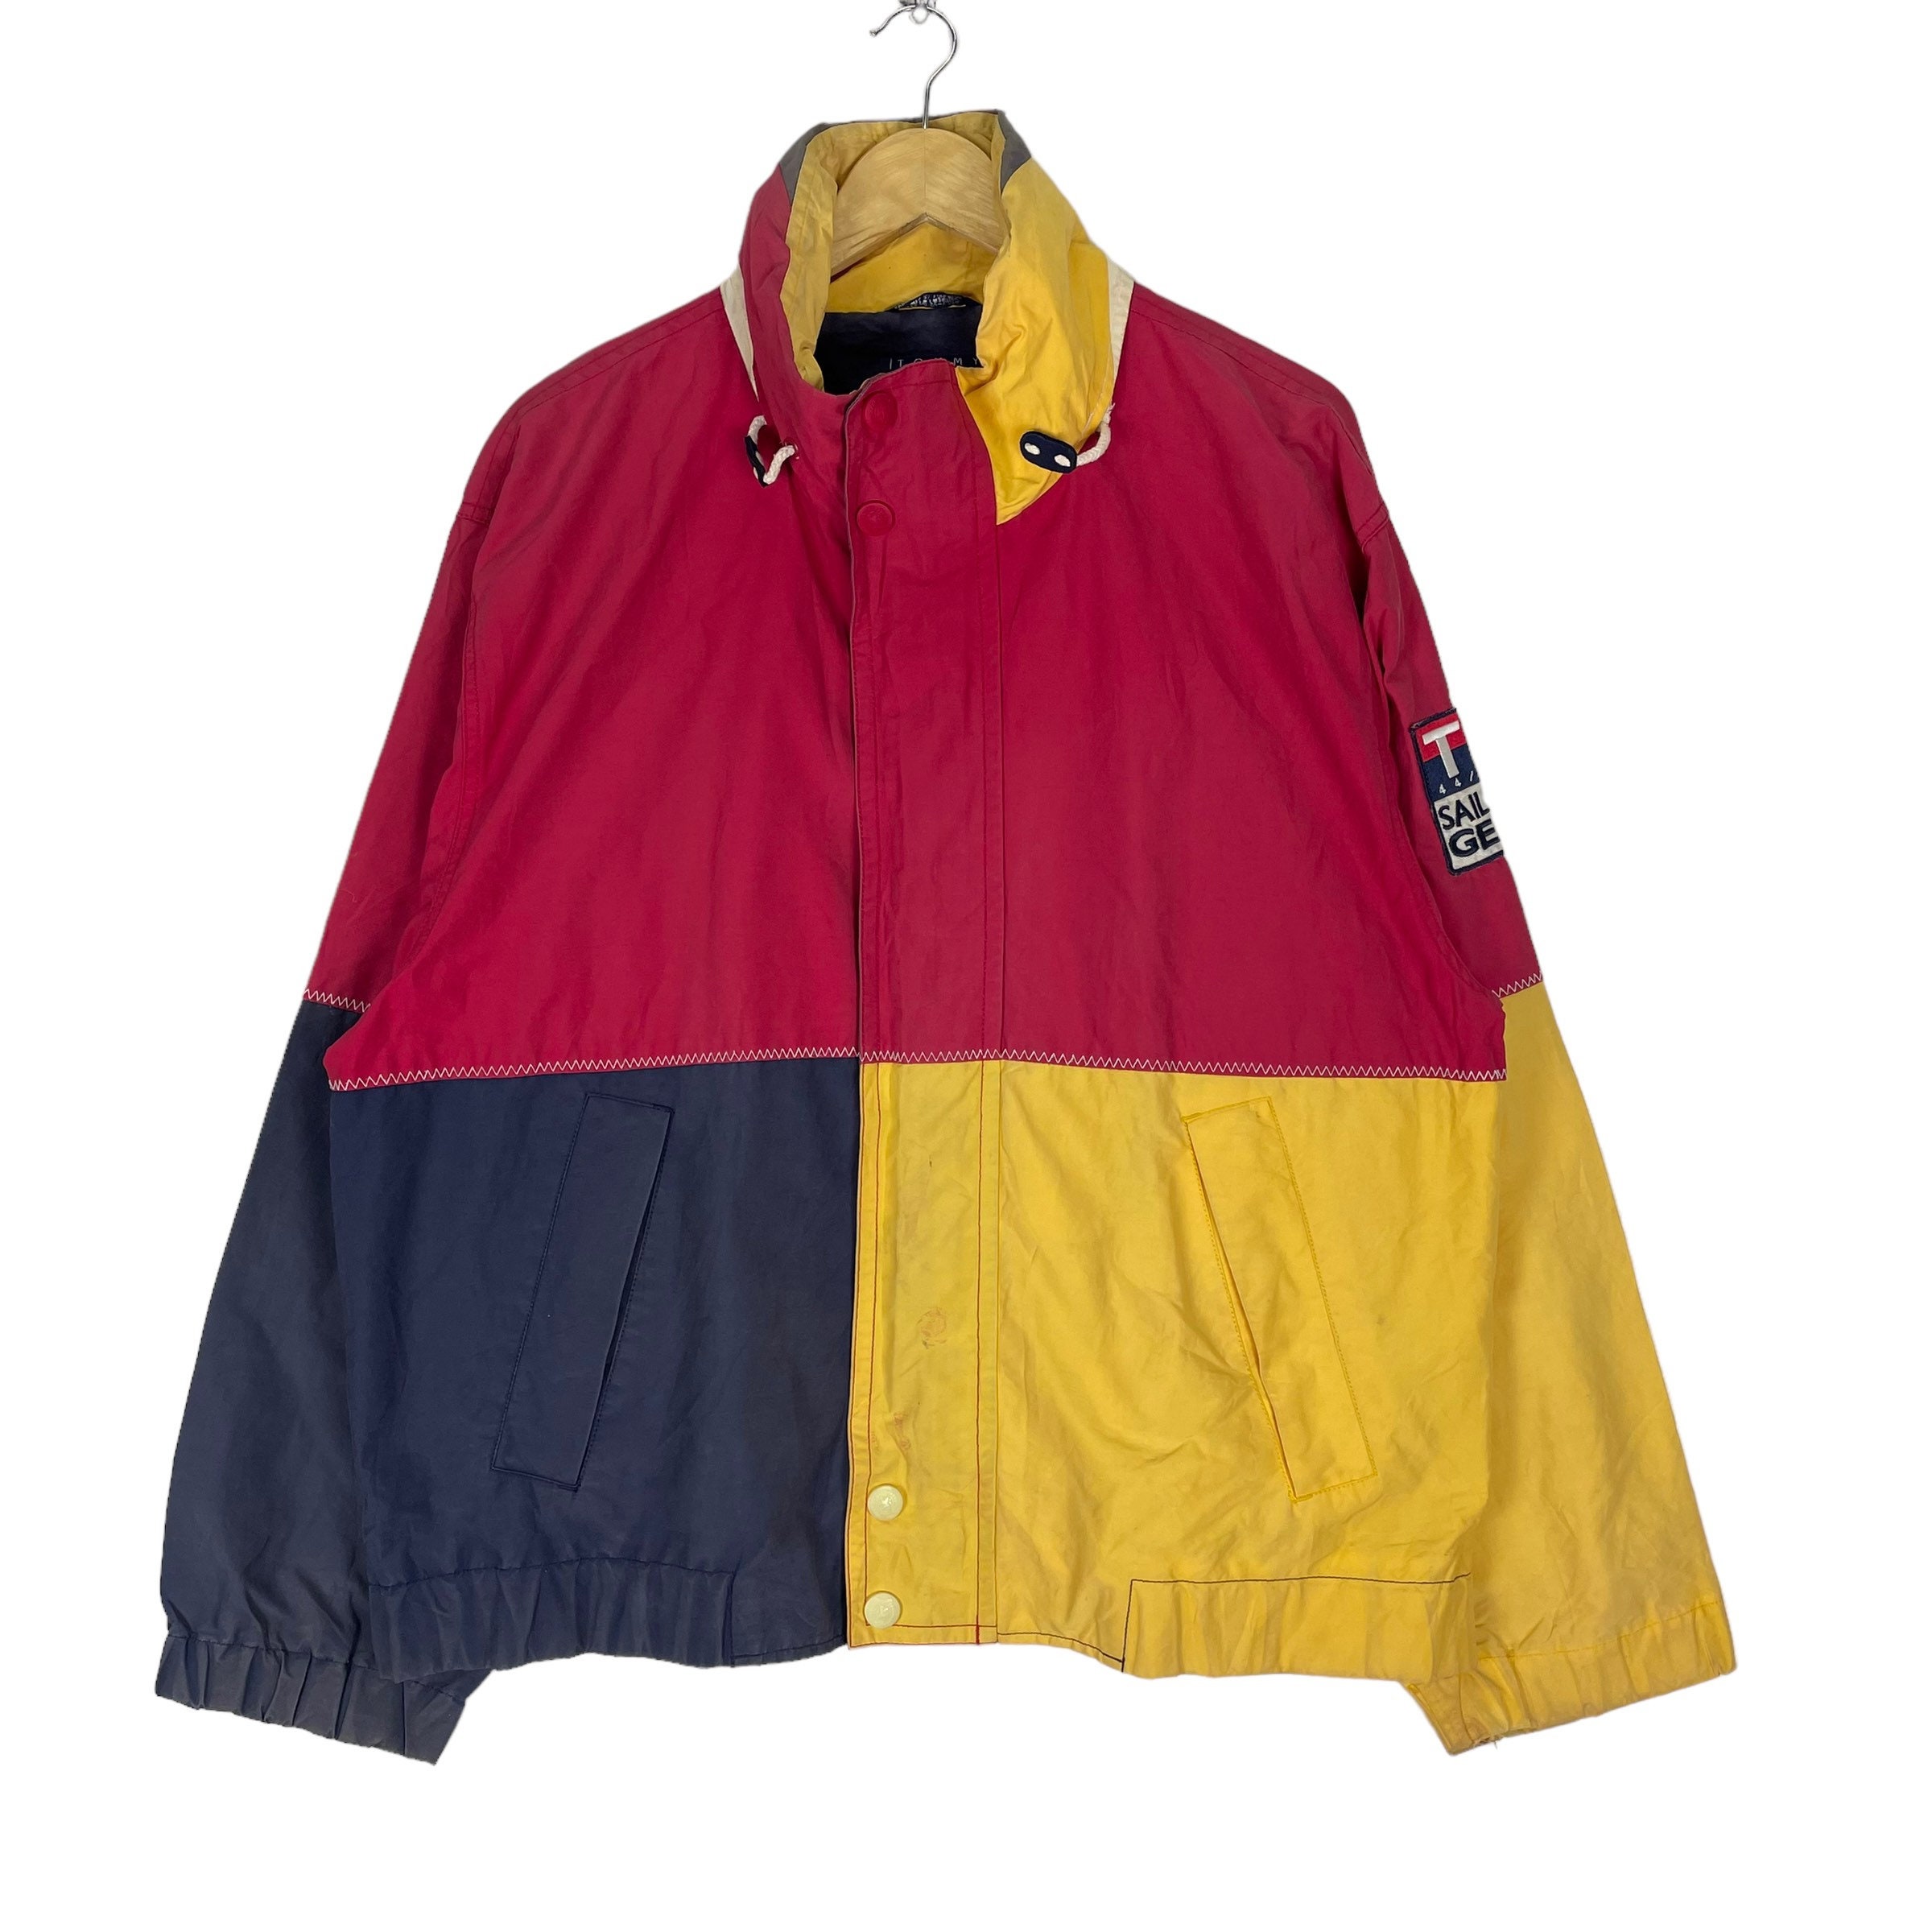 Vintage 90s Tommy Hilfiger Sailing Jacket Windbreaker Etsy